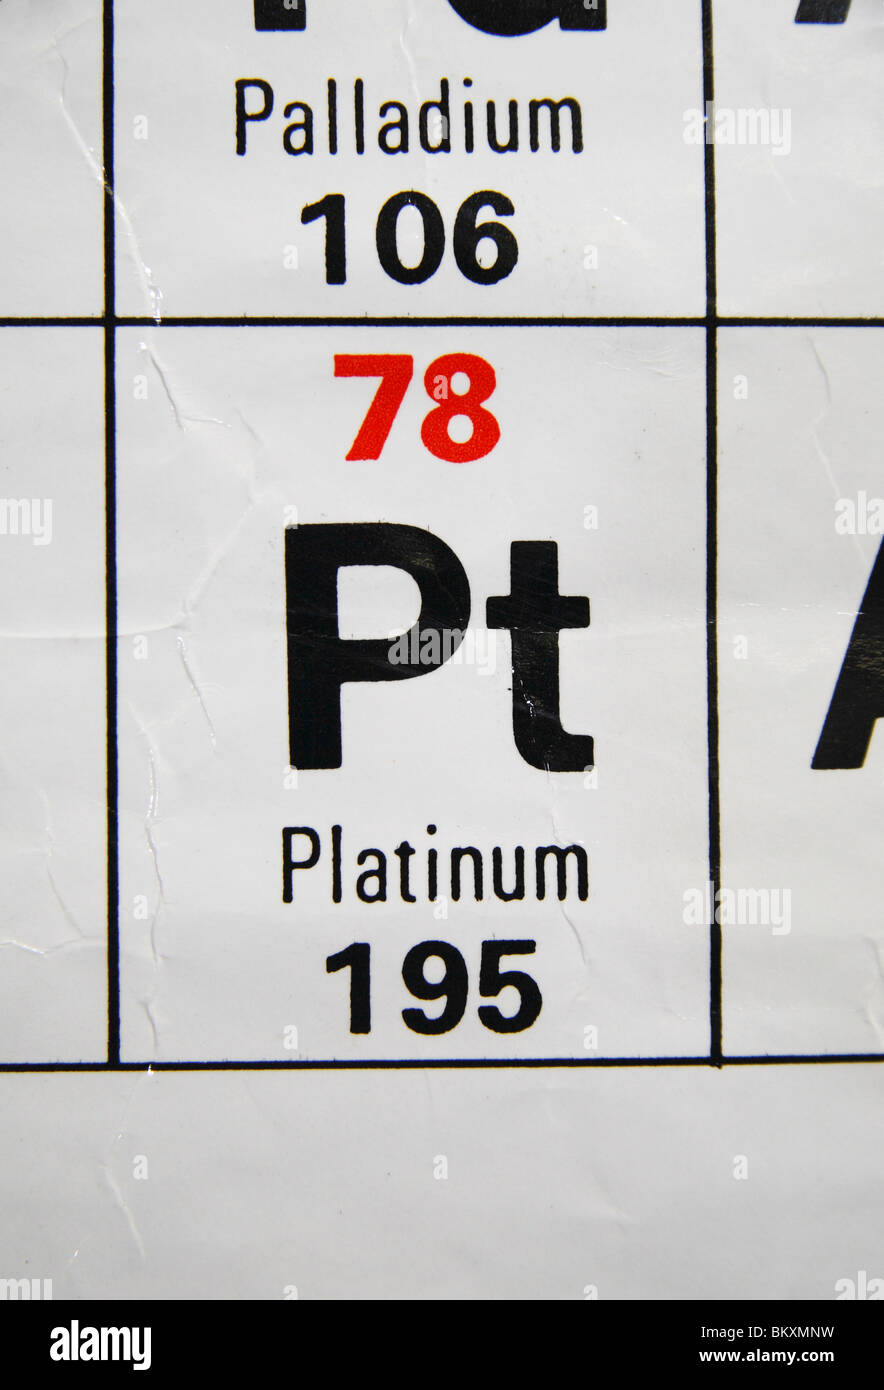 Vista ravvicinata di uno standard UK high school tavola periodica concentrandosi sui metalli preziosi, Platino. Foto Stock